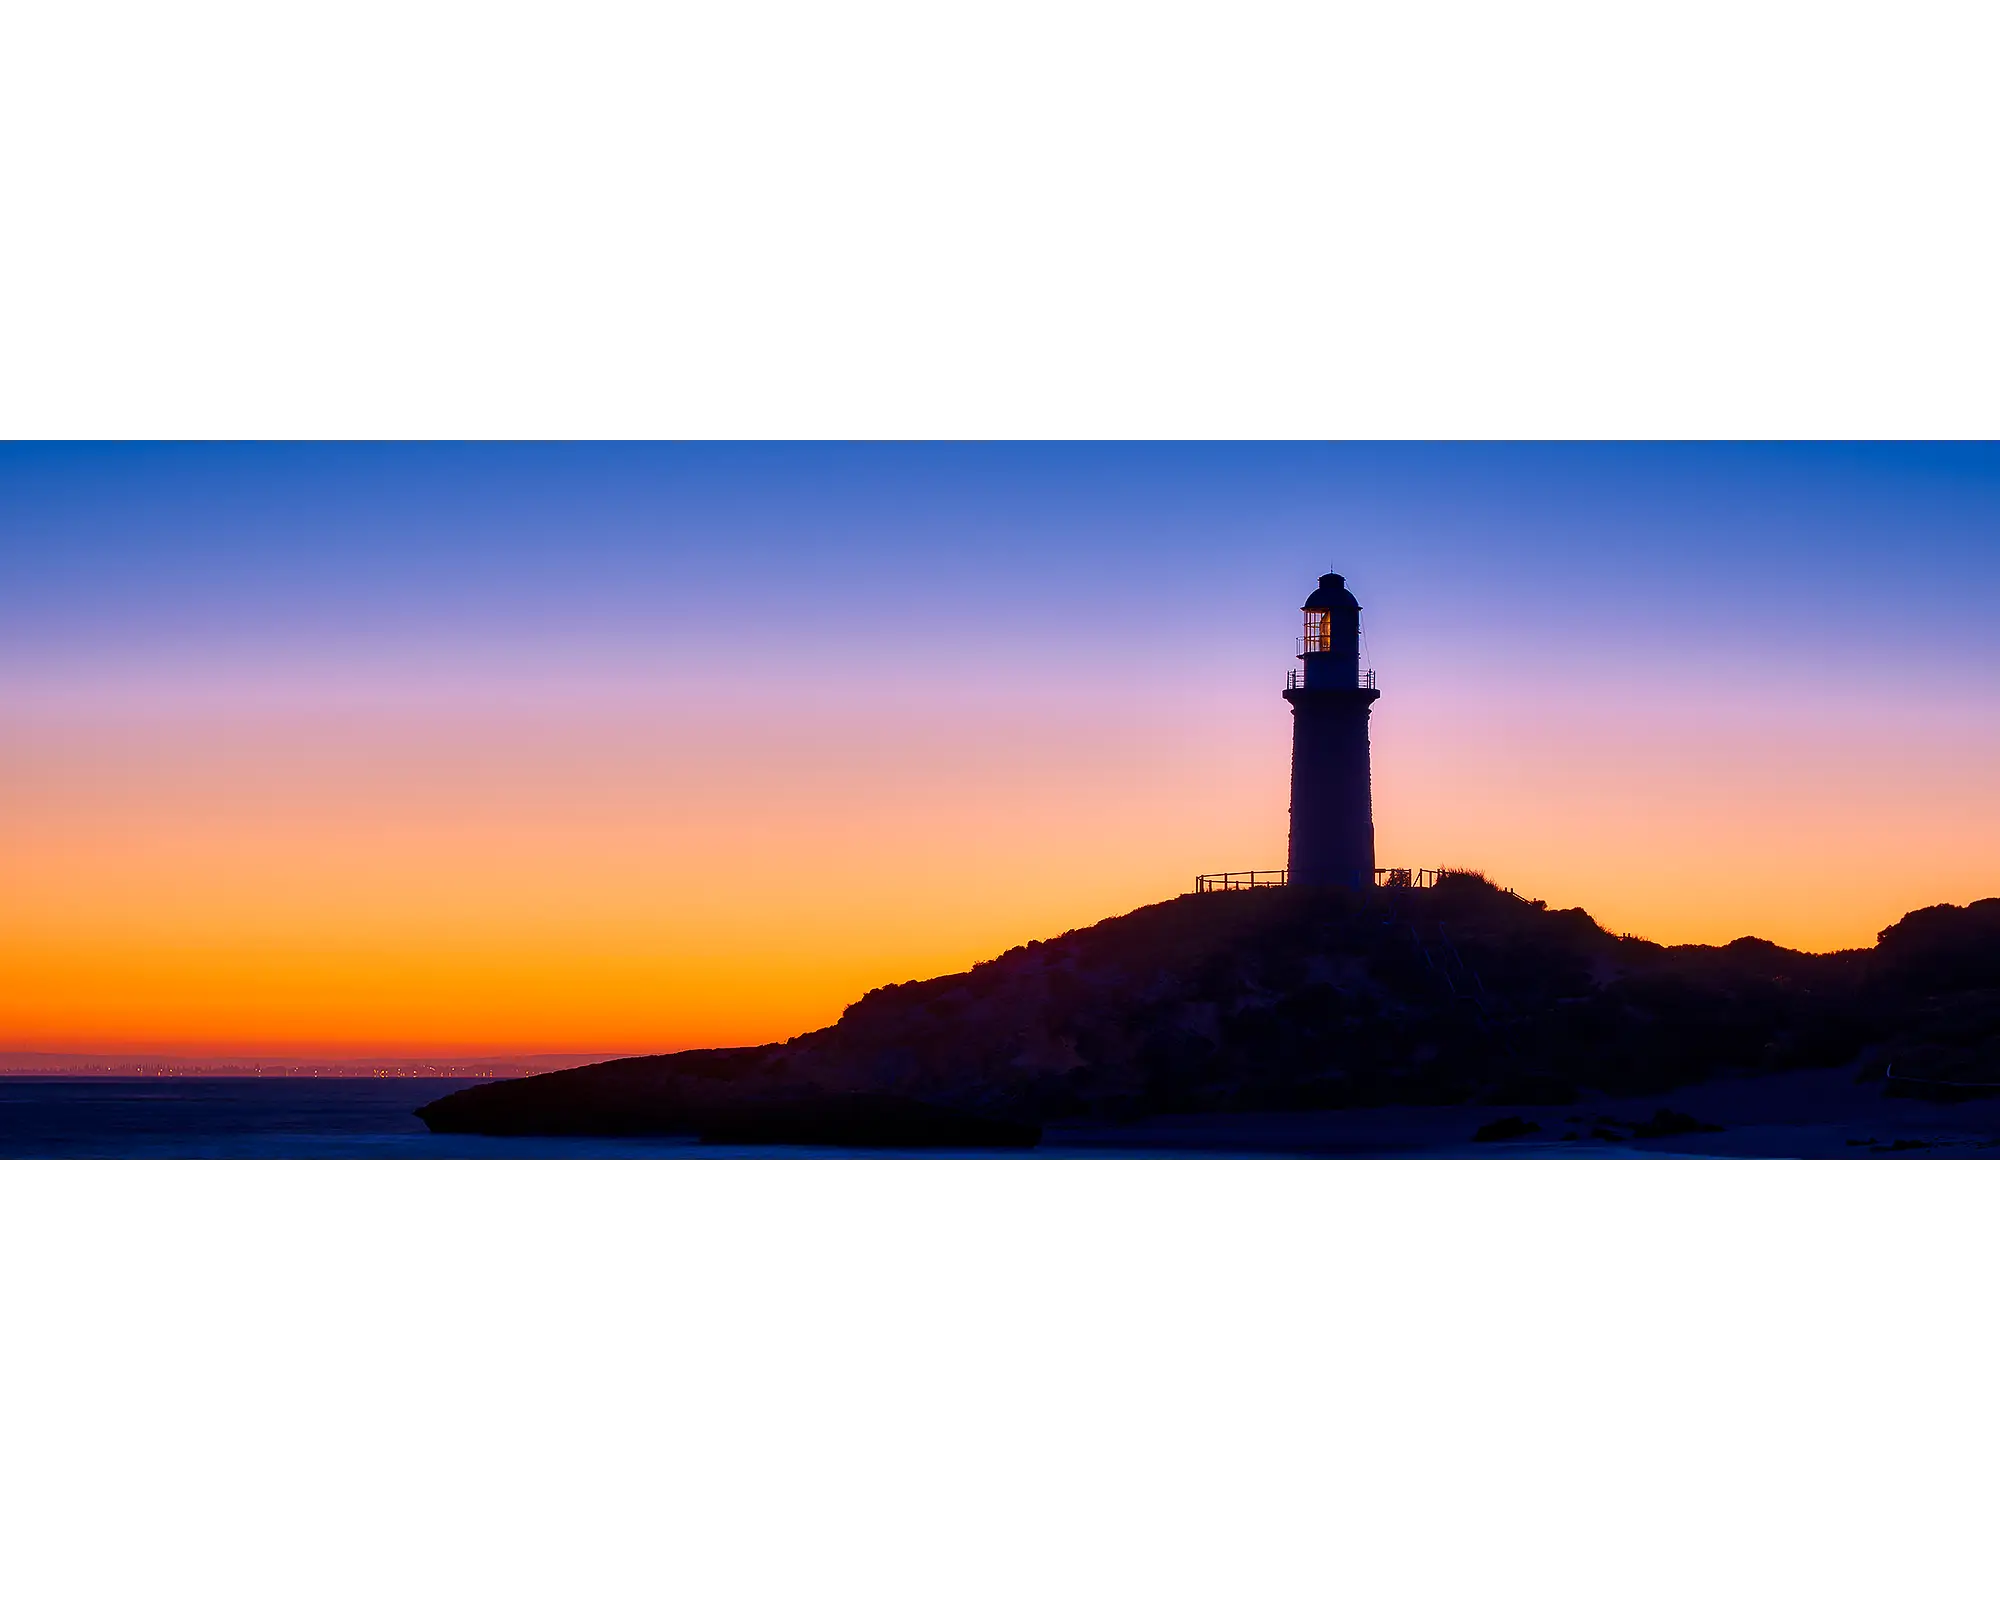 Sunrise at Bathurst Lighthouse, Rottnest Island, WA. 